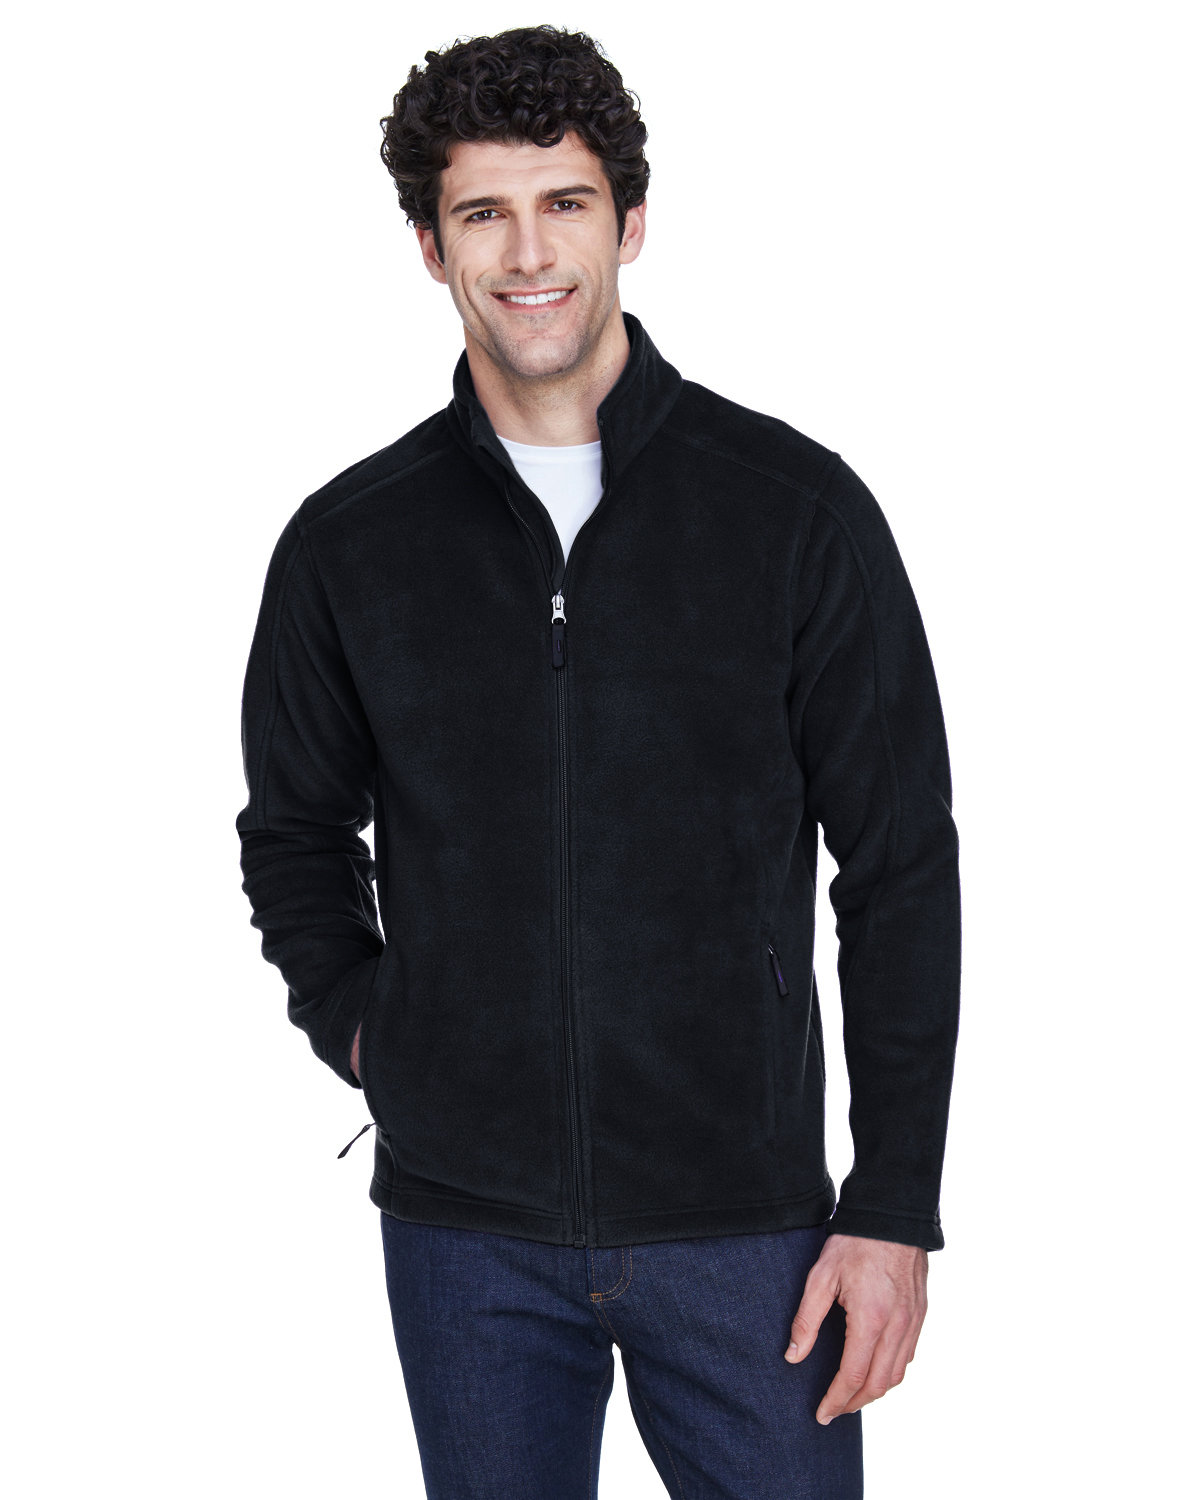 Core 365 Men's Journey Fleece Jacket BLACK 